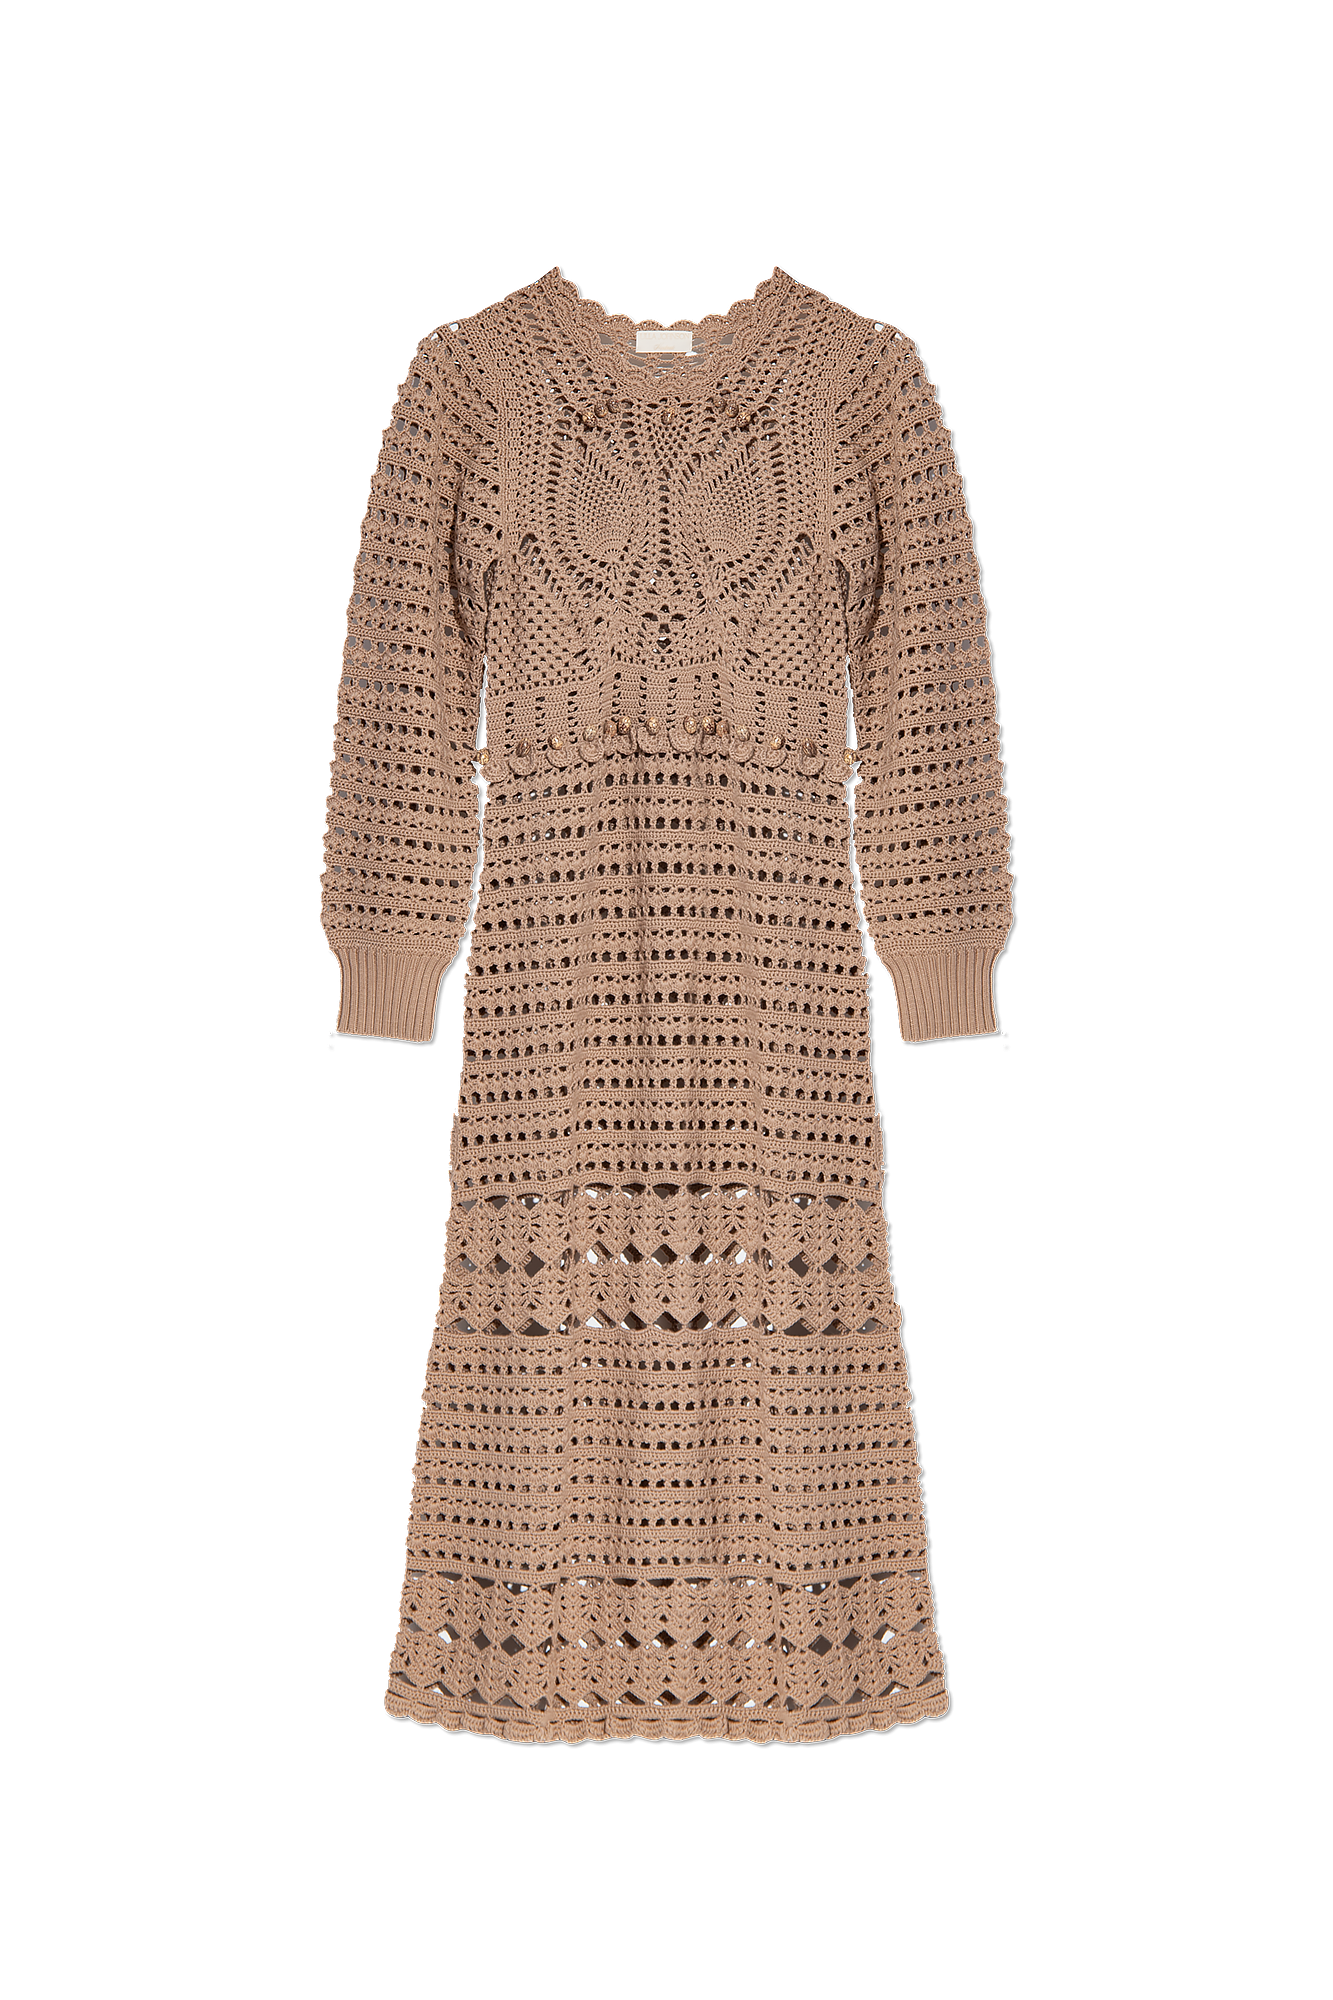 Ulla Johnson ‘Prisha’ crochet dress